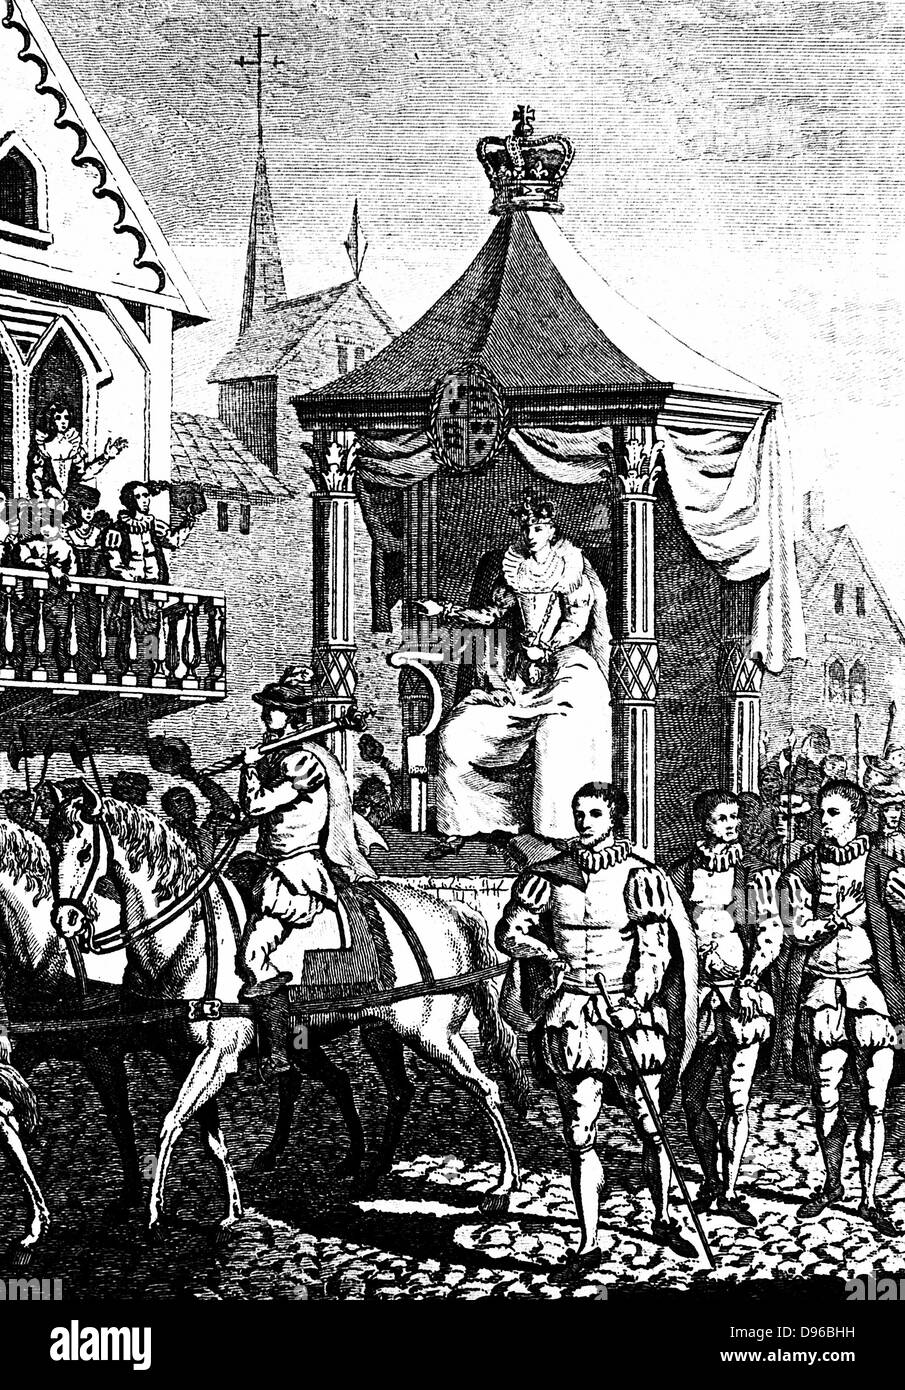 Elizabeth I sur son chemin pour ouvrir la première Royal Exchange, Londres, 23 janvier 1571. La gravure sur cuivre c1680. Banque D'Images